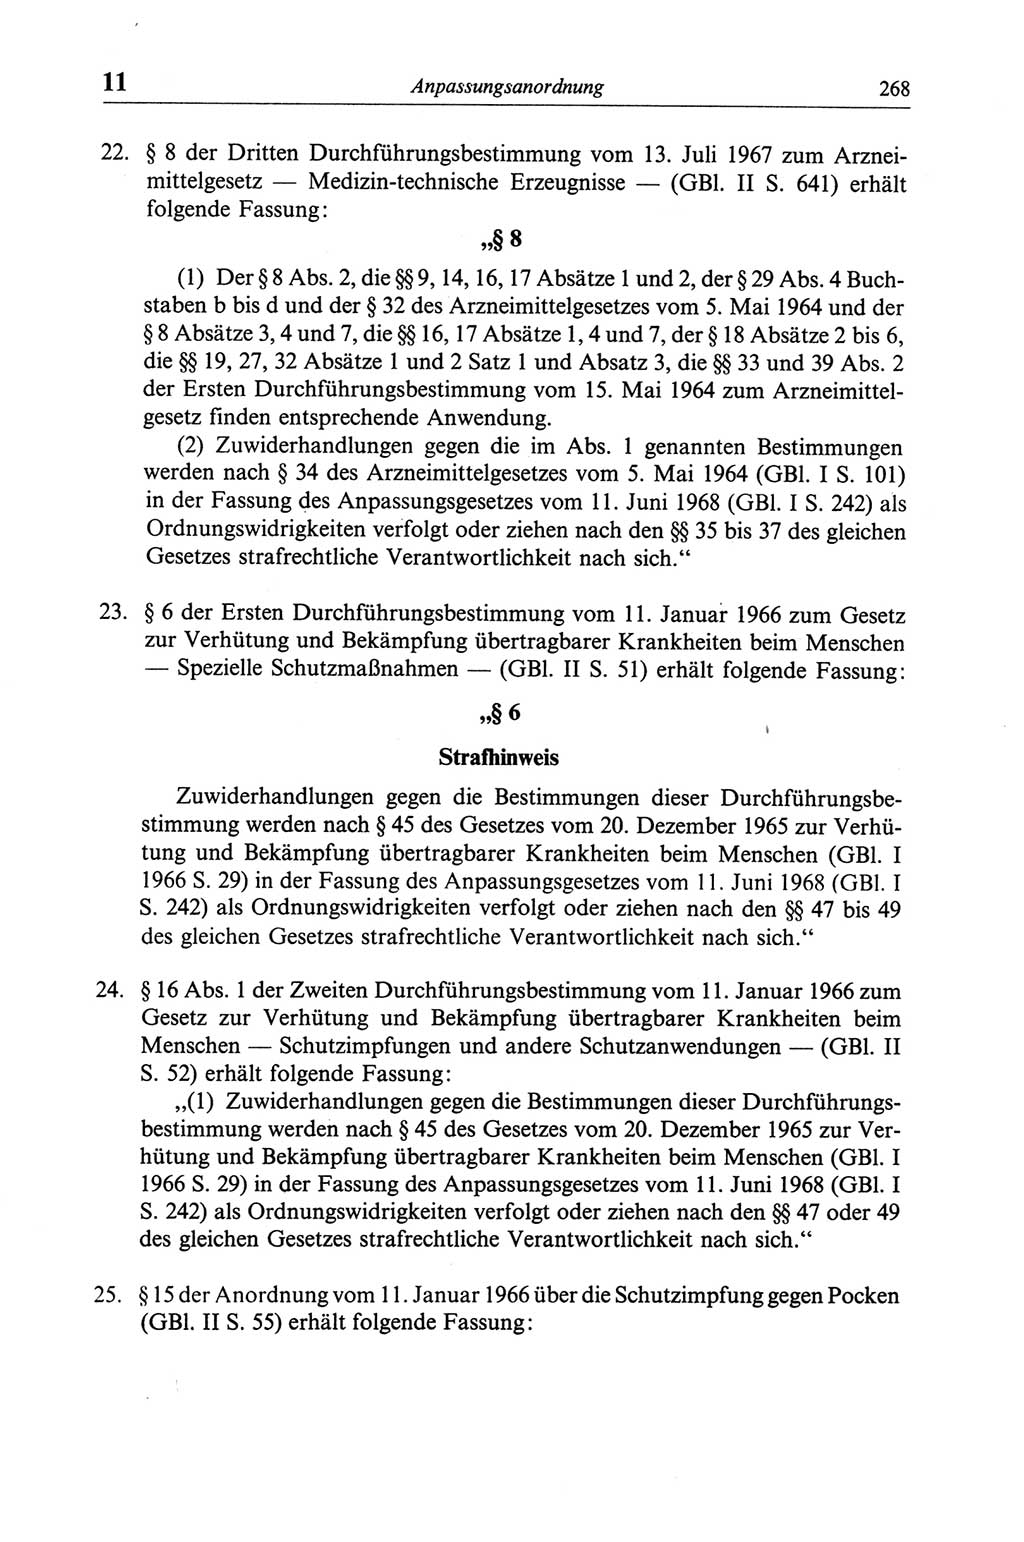 Strafgesetzbuch (StGB) der Deutschen Demokratischen Republik (DDR) und angrenzende Gesetze und Bestimmungen 1968, Seite 268 (StGB Ges. Best. DDR 1968, S. 268)